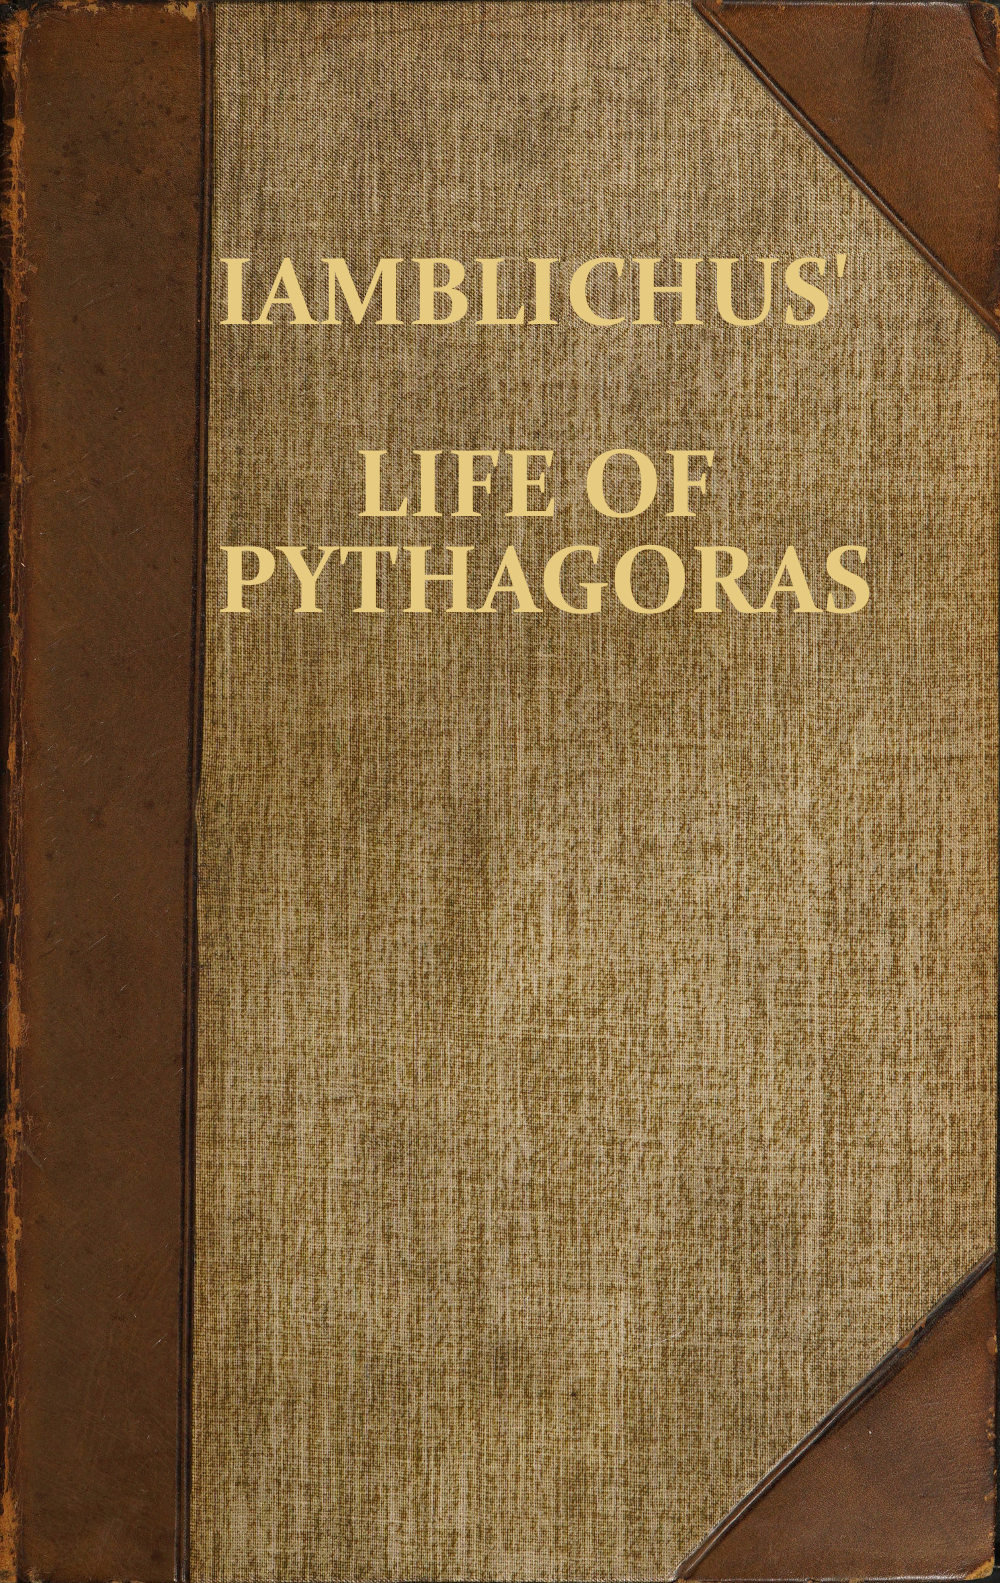 Iamblichus’ Life of Pythagoras, or Pythagoric Life